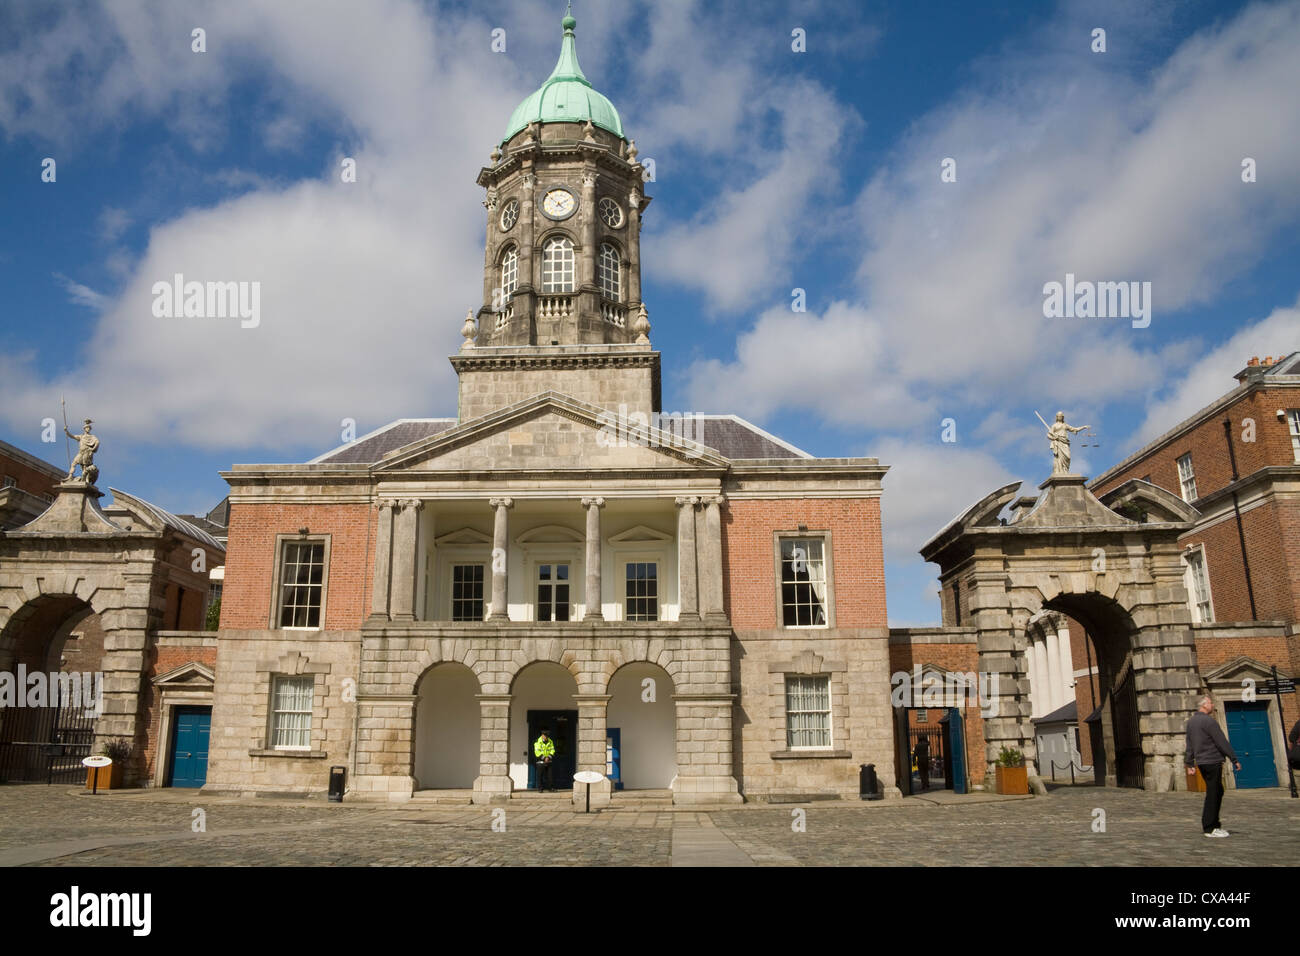 La ville de Dublin Irlande UE La tour de Bedford 1761 pièce maîtresse du château principal de la Cour de justice géorgienne Fortitude portes sur beau jour de septembre Banque D'Images